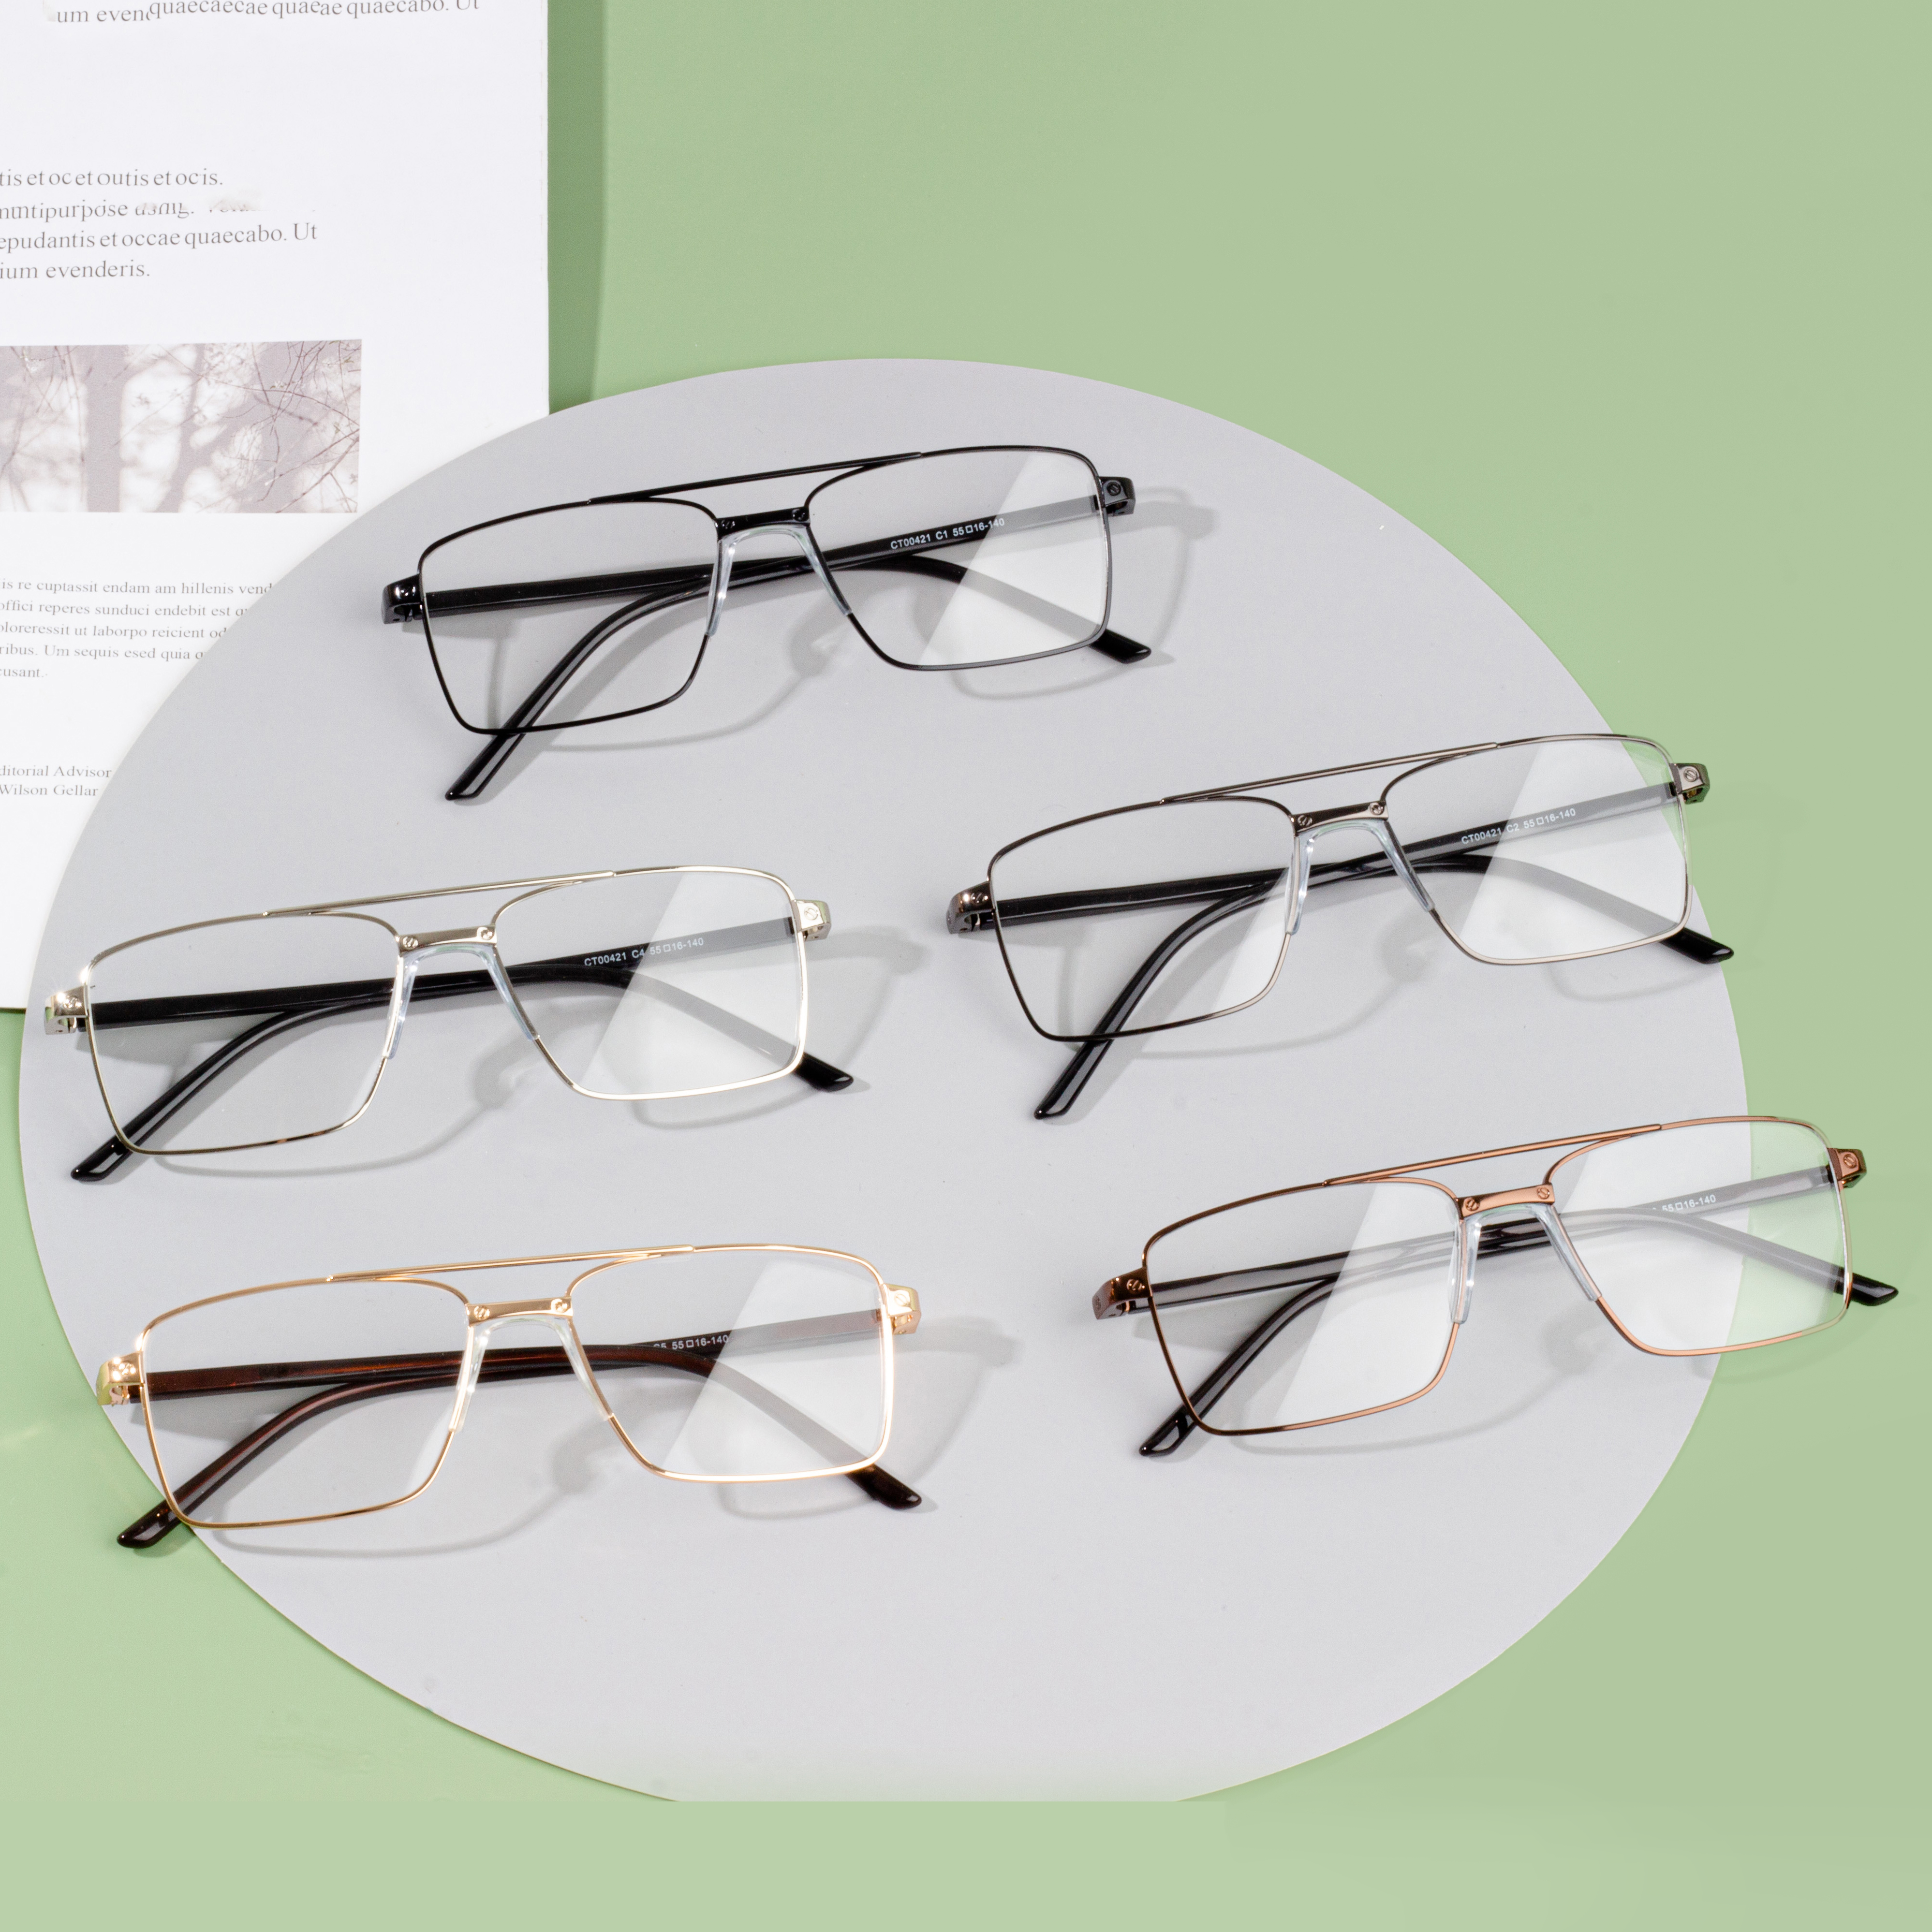 أفضل أنماط إطارات النظارات الحديثة للرجال